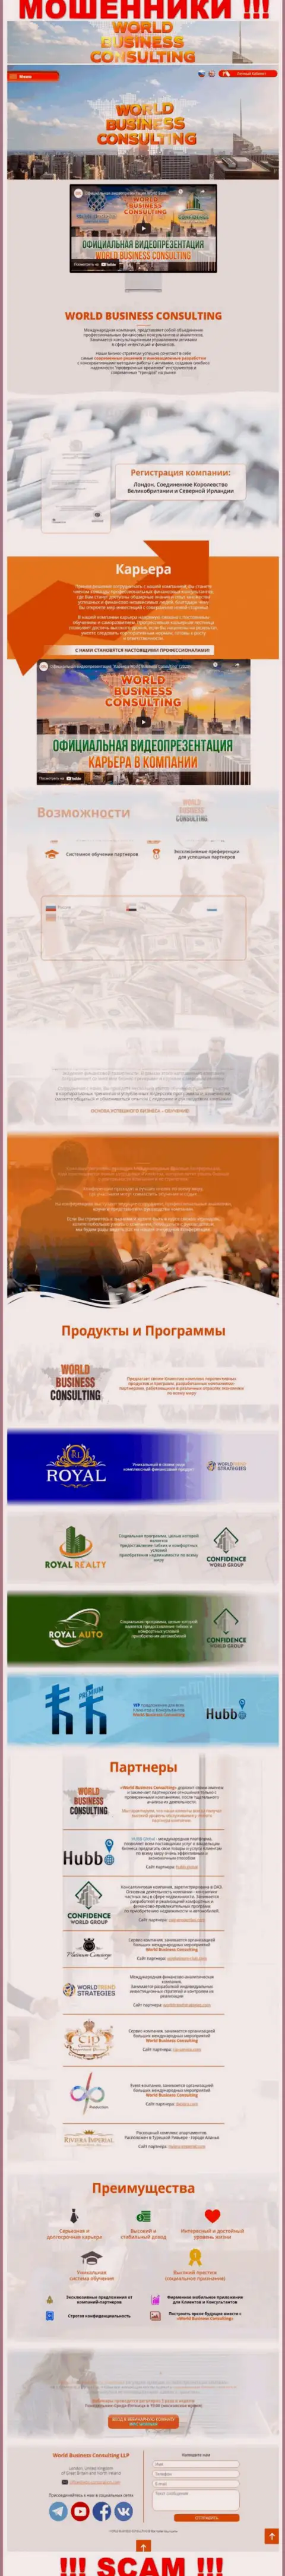 Информационный сервис шулеров World Business Consulting